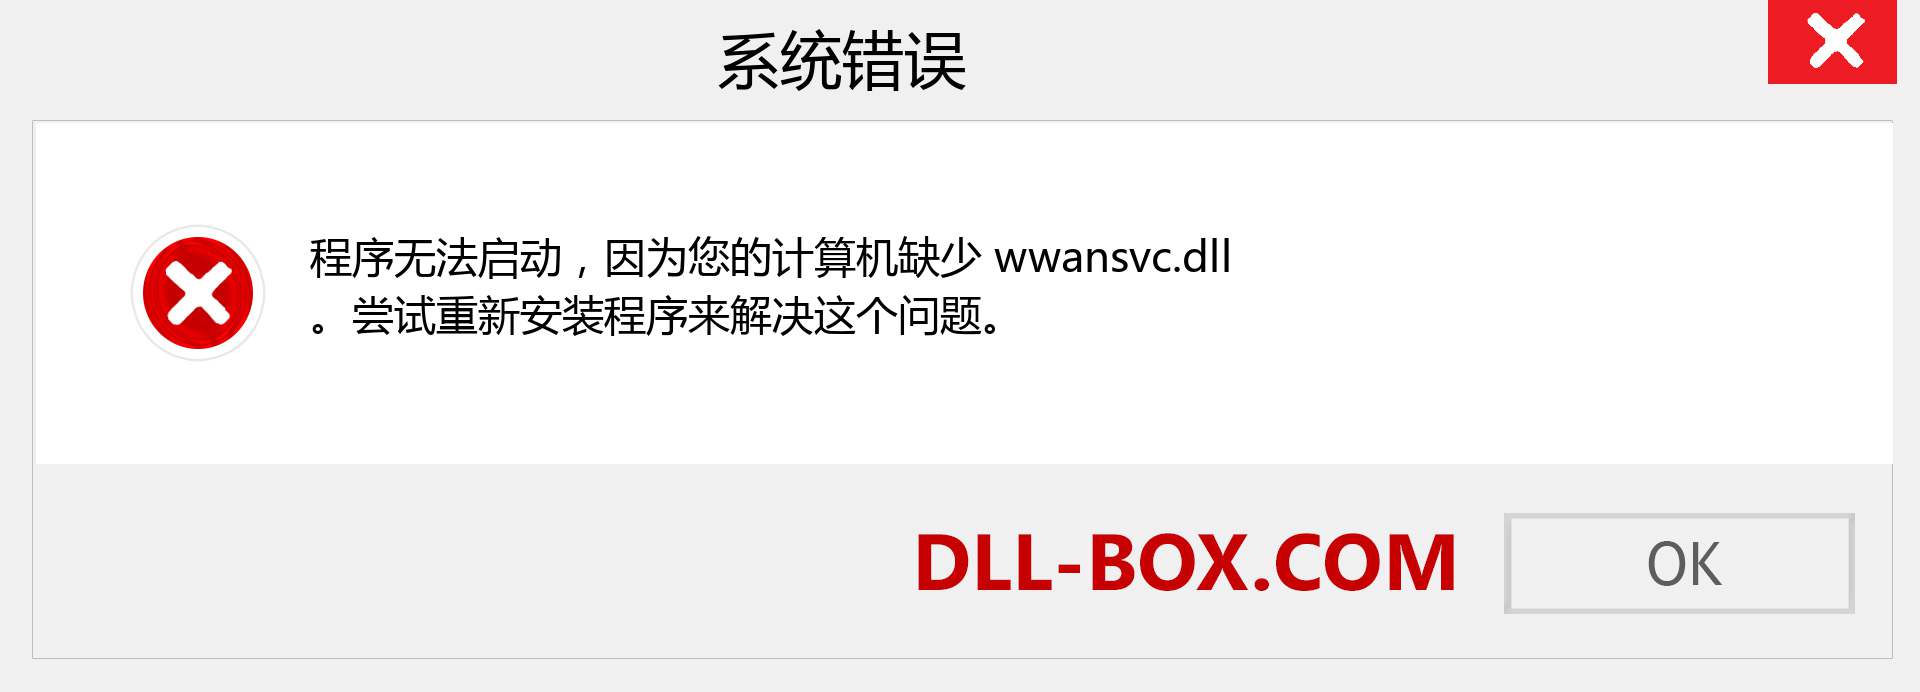 wwansvc.dll 文件丢失？。 适用于 Windows 7、8、10 的下载 - 修复 Windows、照片、图像上的 wwansvc dll 丢失错误